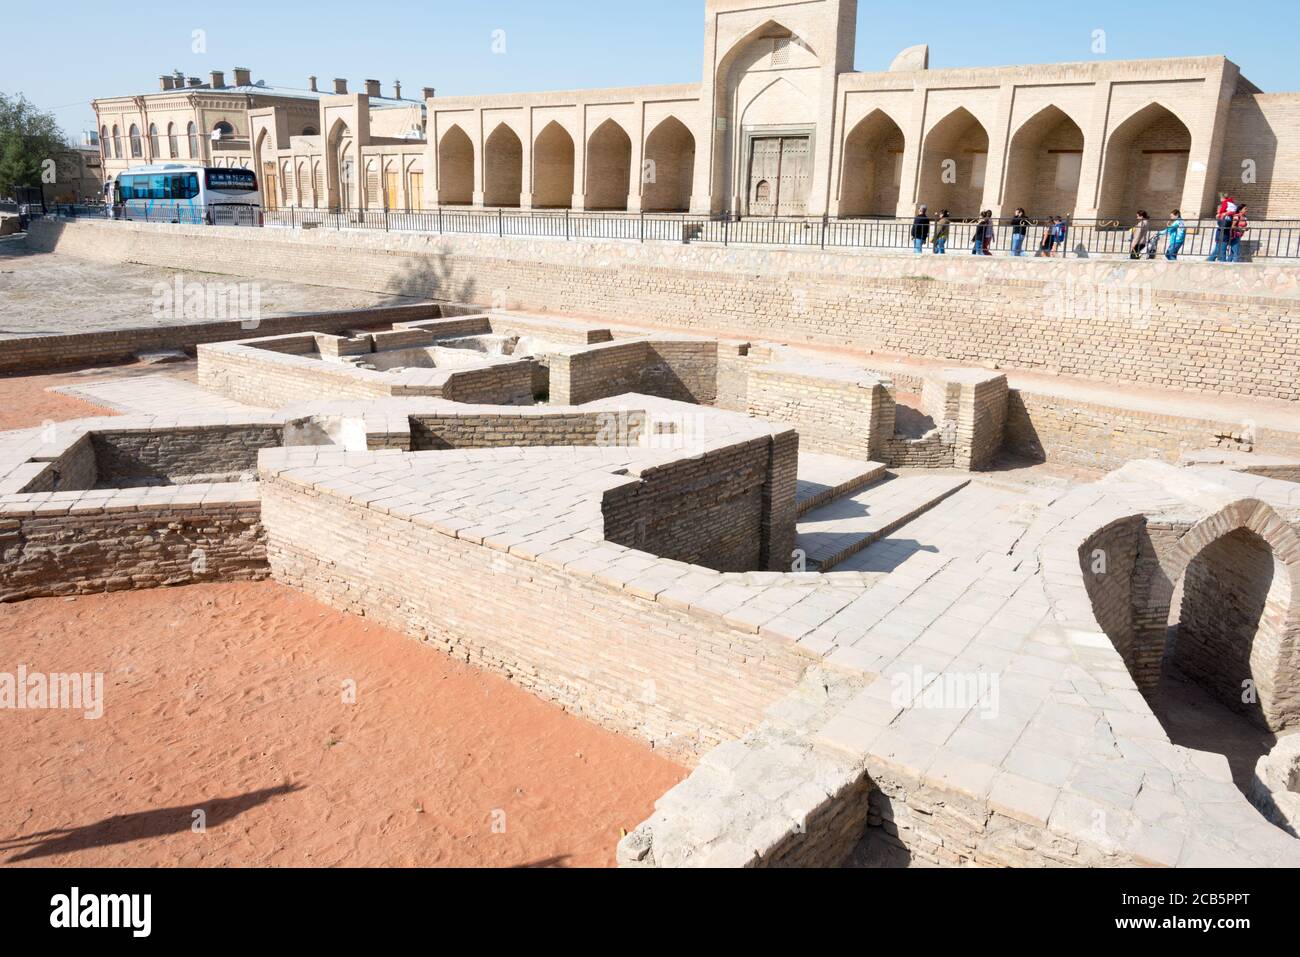 Bujara, Uzbekistán - restos de Caravansary y casa de baño en Bujara, Uzbekistán. El casco antiguo de Bujara es declarado Patrimonio de la Humanidad por la Unesco. Foto de stock